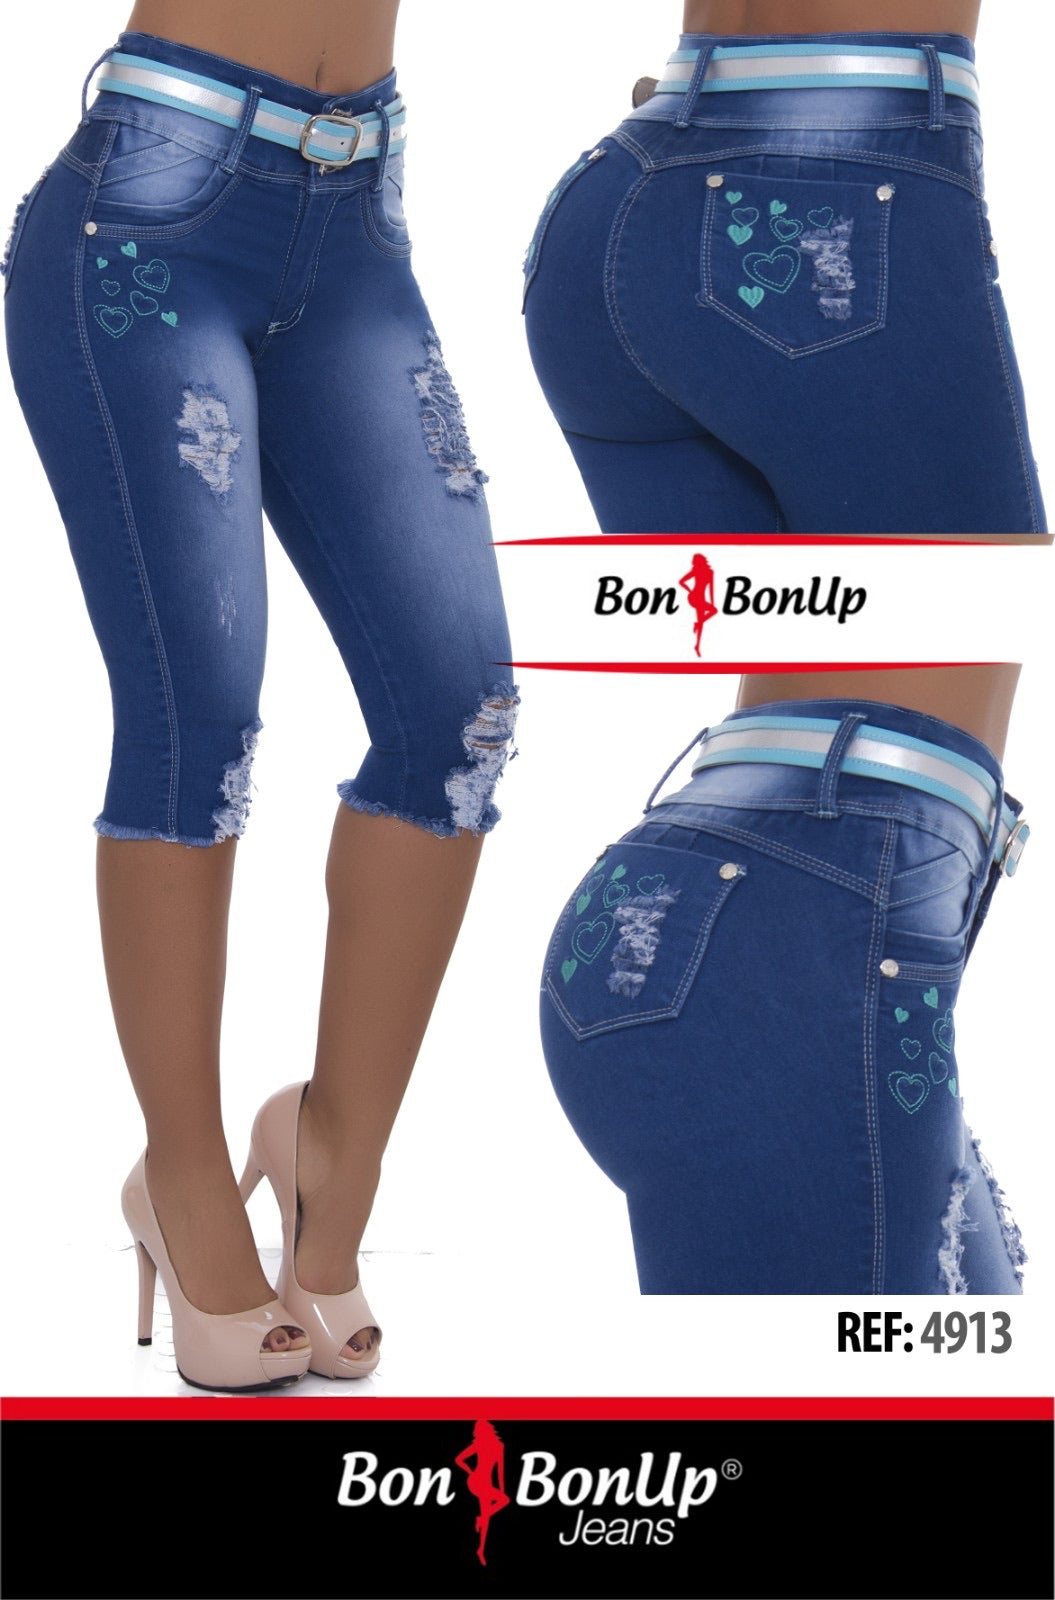 4913 BonBonUp Jeans